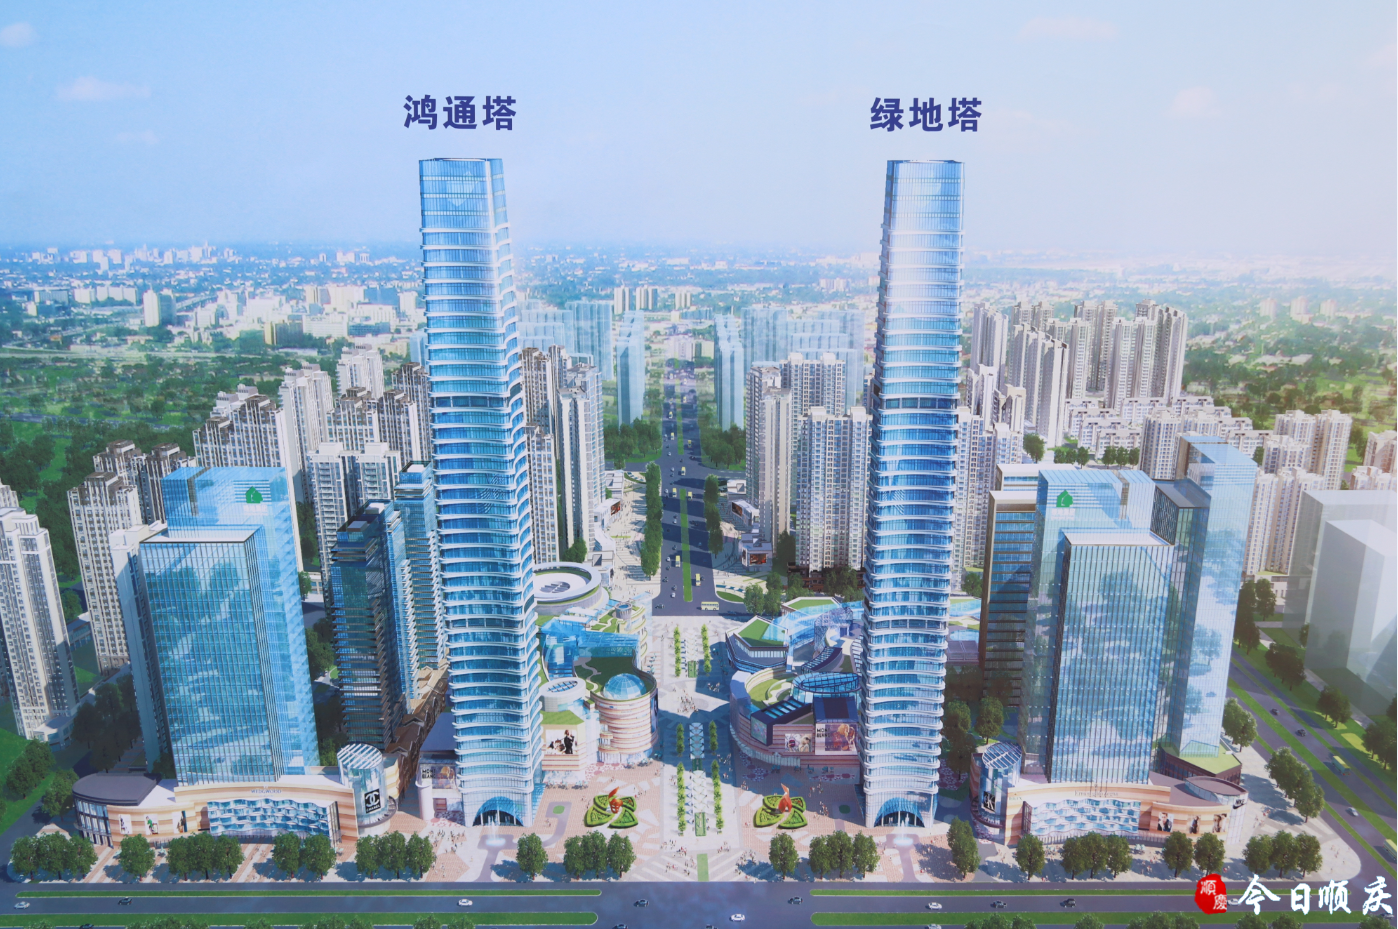 届时,双子塔将是顺庆北部新城最耀眼